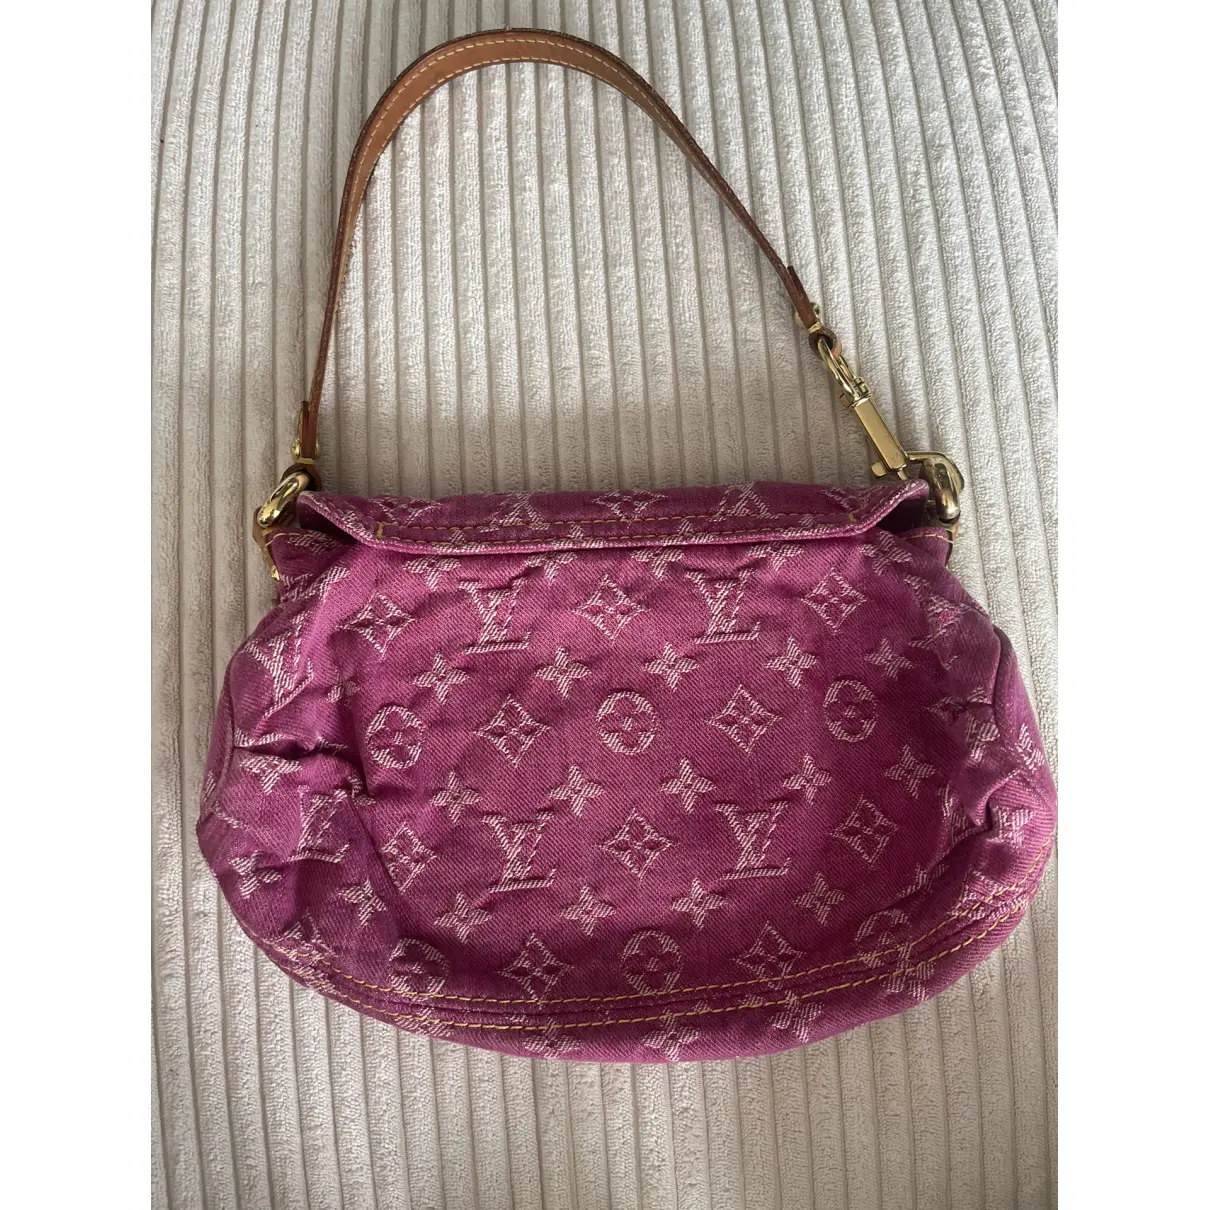 Pleaty handbag Louis Vuitton